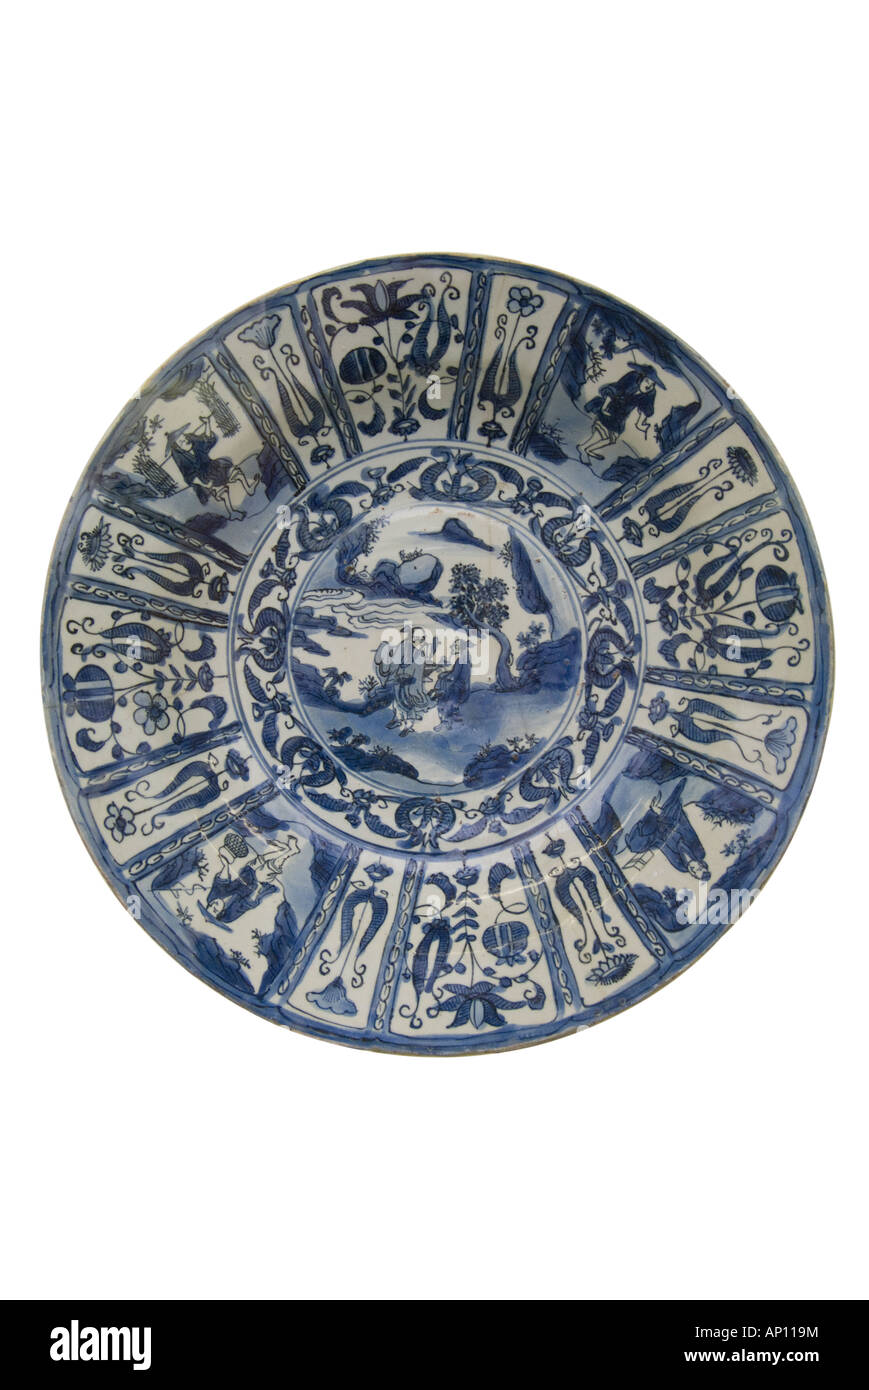 Plaque en céramique de porcelaine de la dynastie Ming, l'eau des cours d'eau chinois jardin balance symétrie harmonie grâce au nord-est de l'Asie Asie Chine Banque D'Images